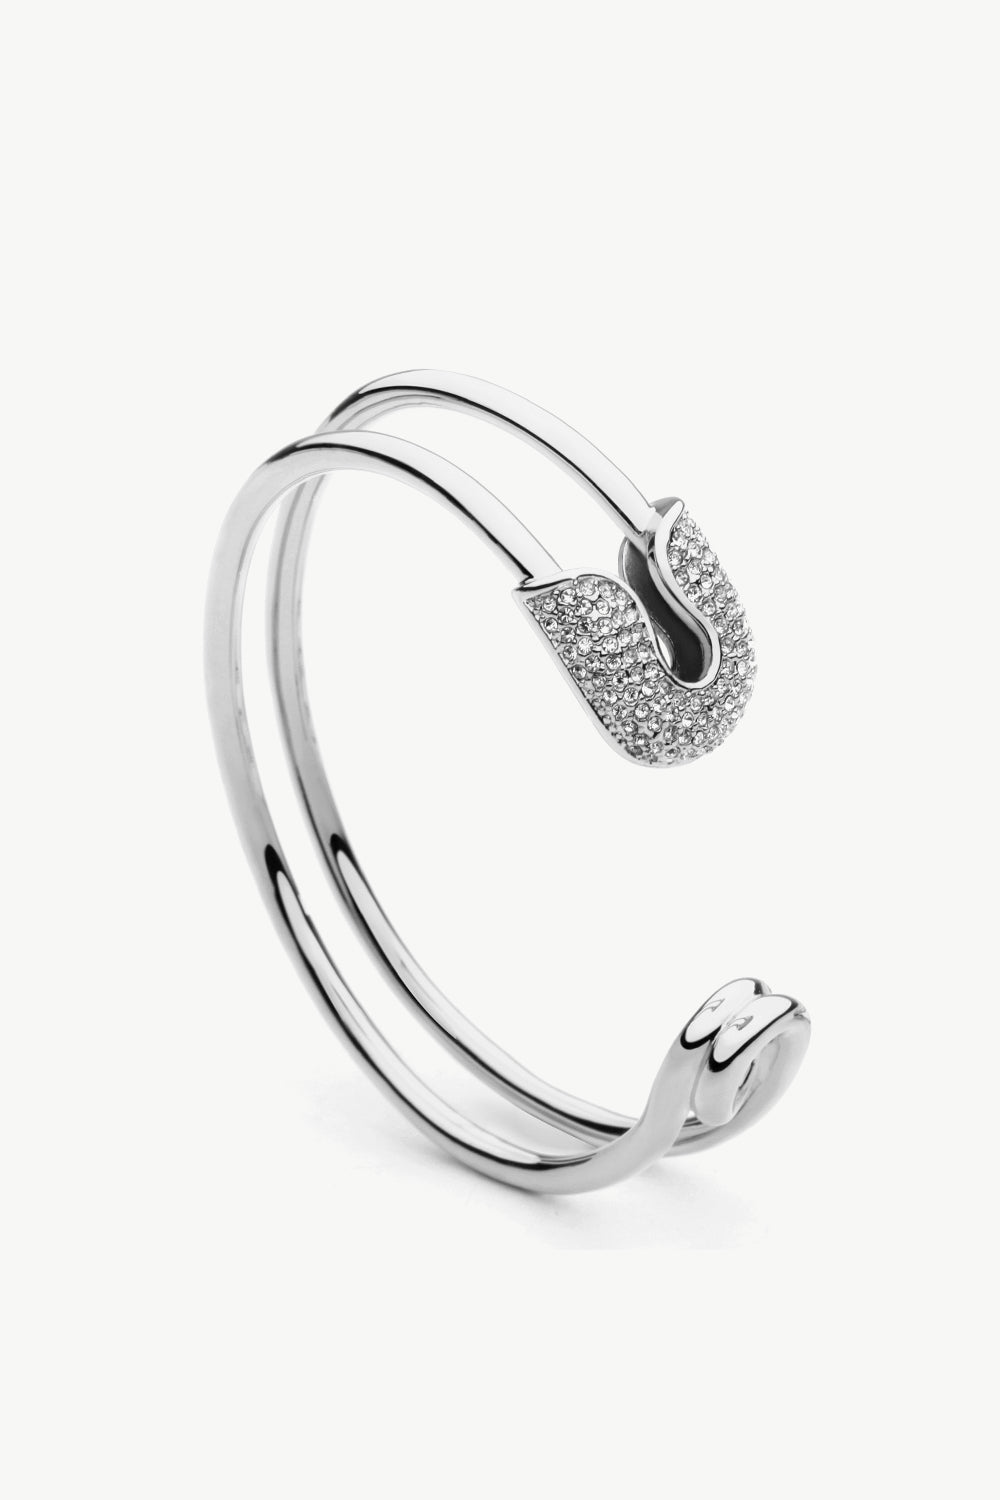 Rhinestone Double Hoop Bracelet - Silver / One Size - Women’s Jewelry - Bracelets - 4 - 2024